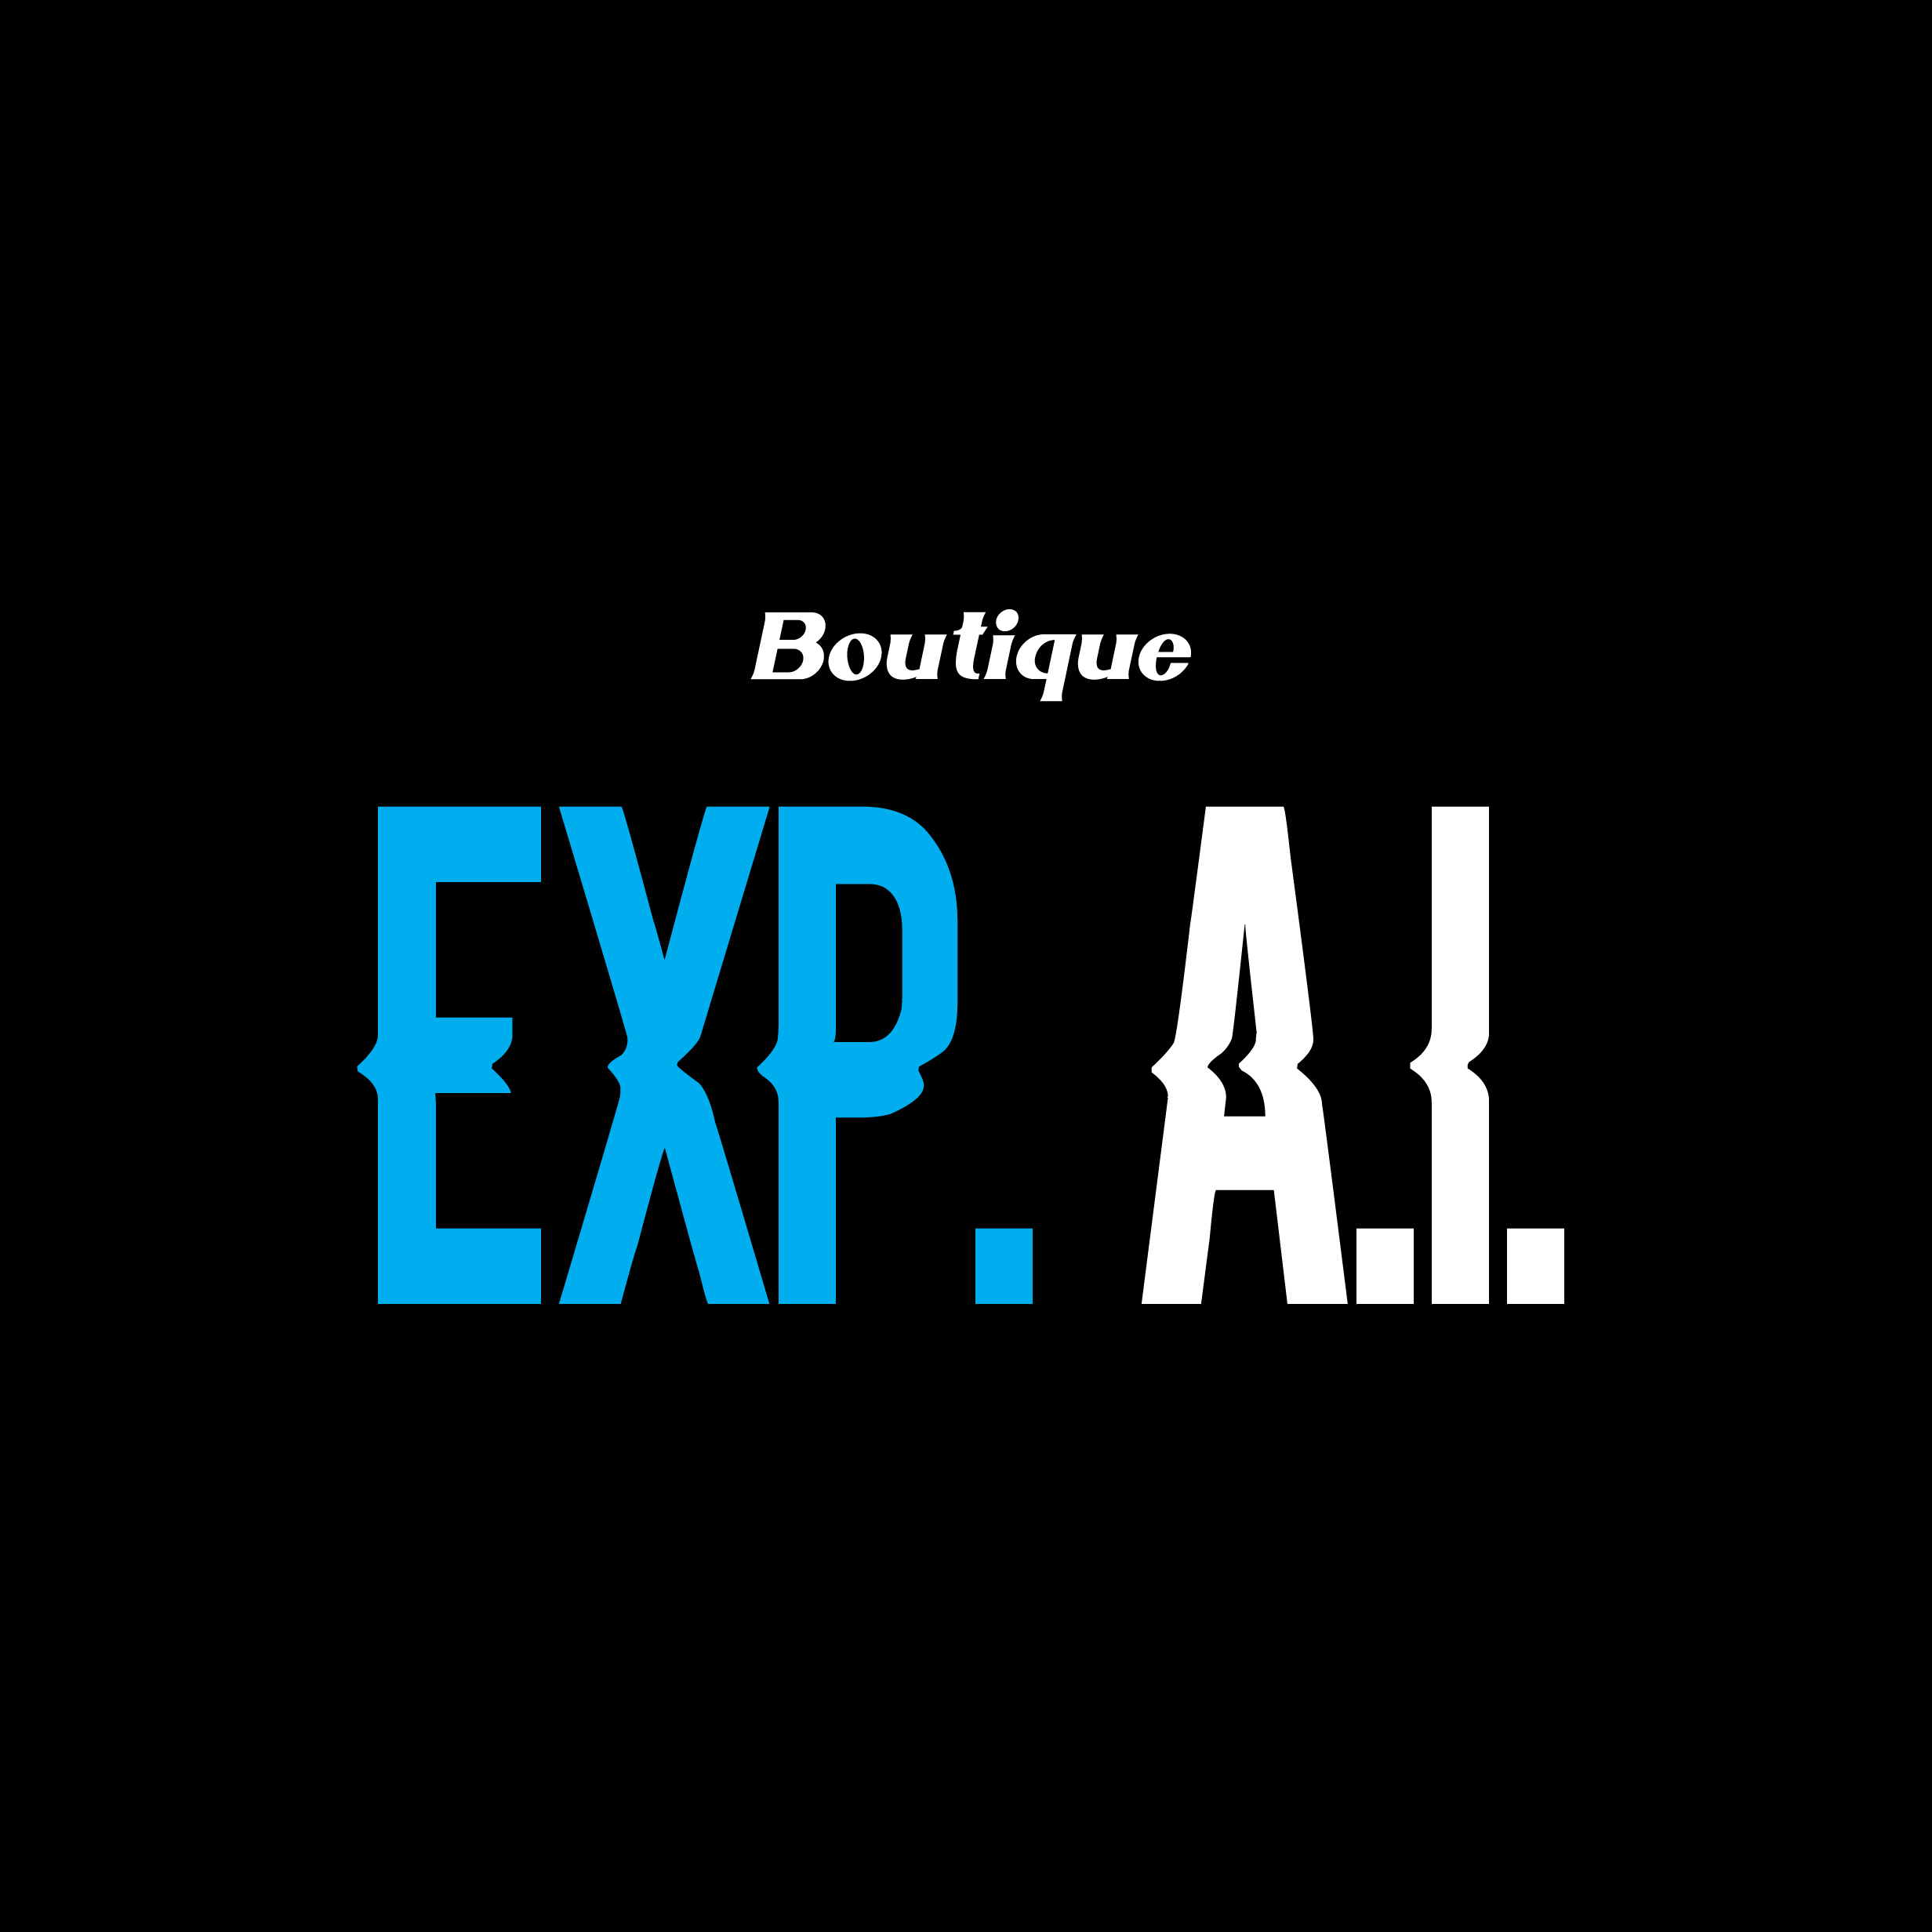 Boutique Exp.A.I.